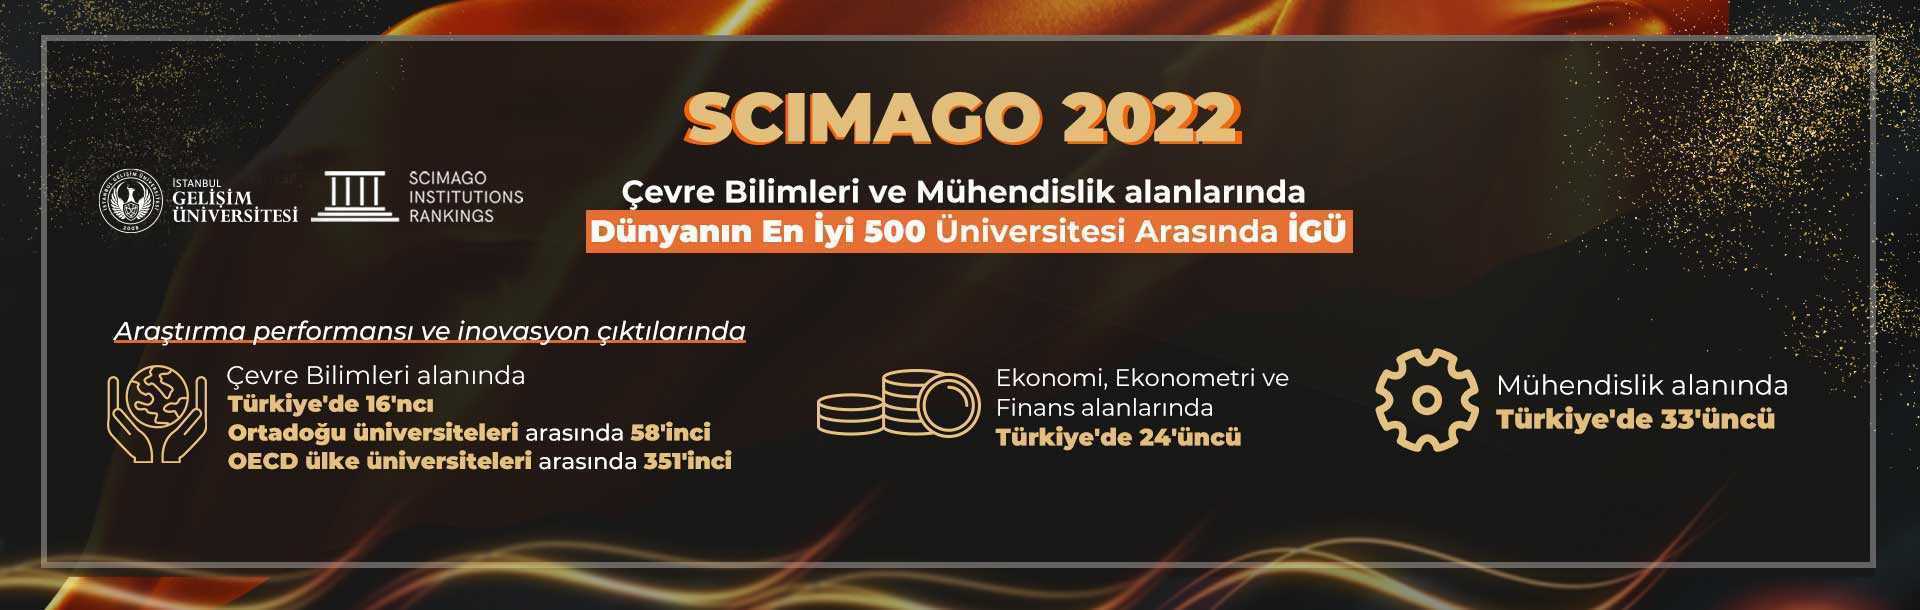 SCIMAGO 2022